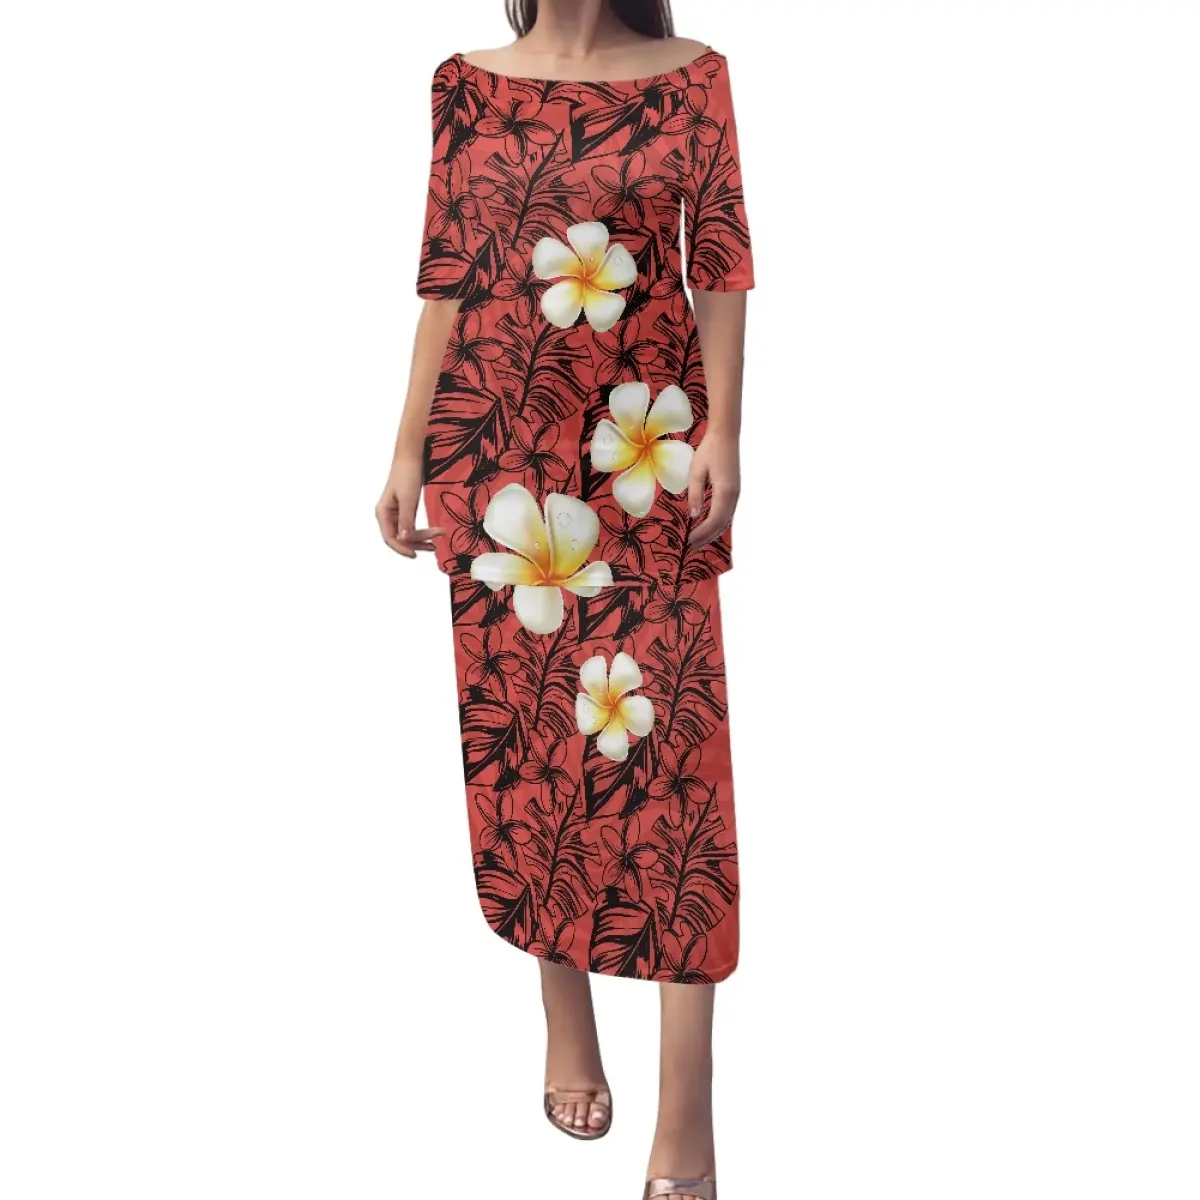 Samoan Puletasi giyim polinezya hatmi çiçeği tasarımcı ada kadın elbisesi ucuz toptan zarif kapalı tek omuzlu elbise sıcak